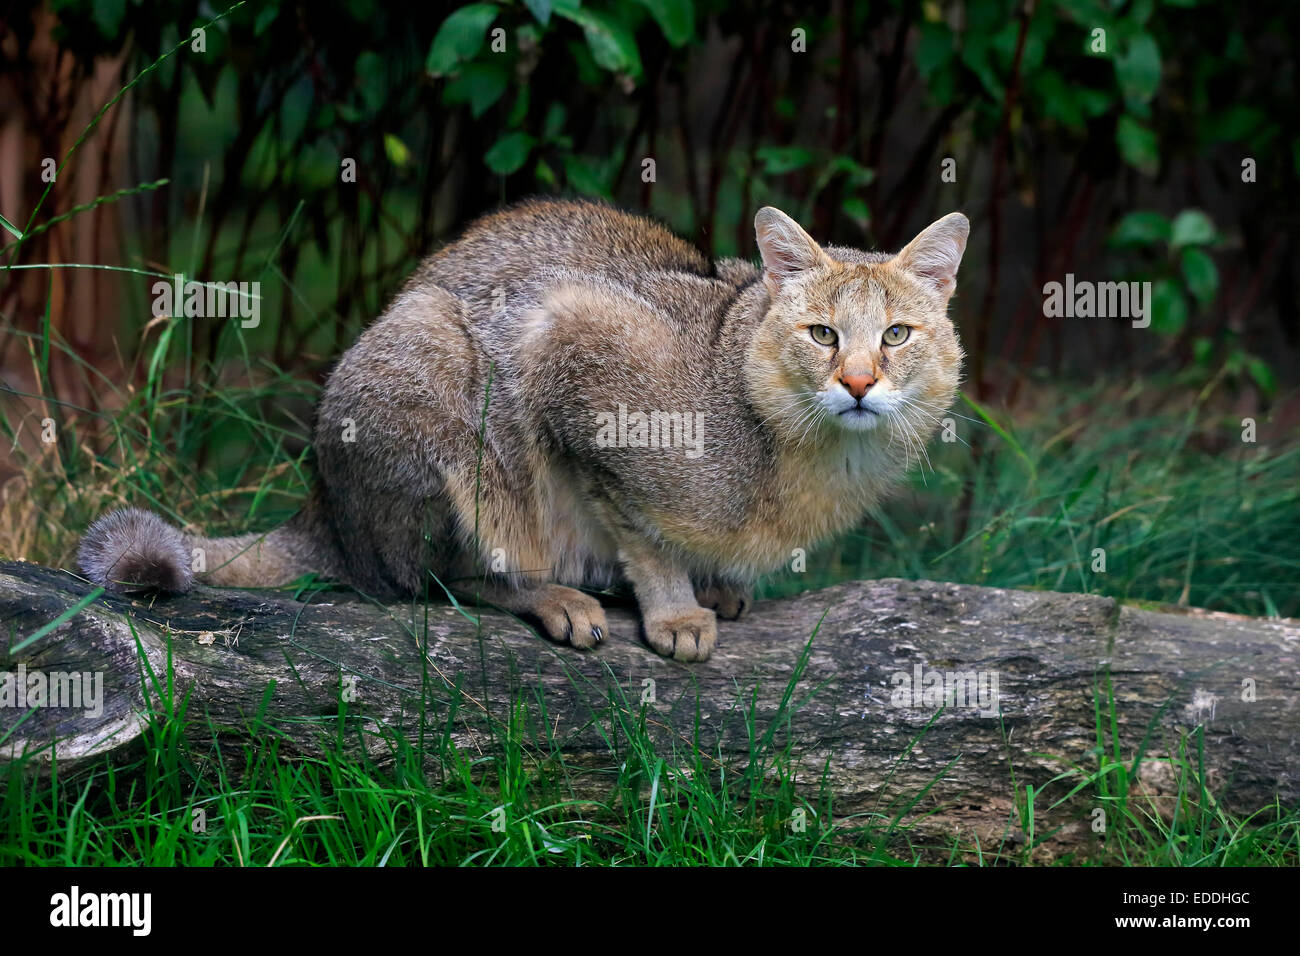 Jungle Cat (Felis chaus), adulto, nativo de Asia, cautiva, England, Reino Unido Foto de stock